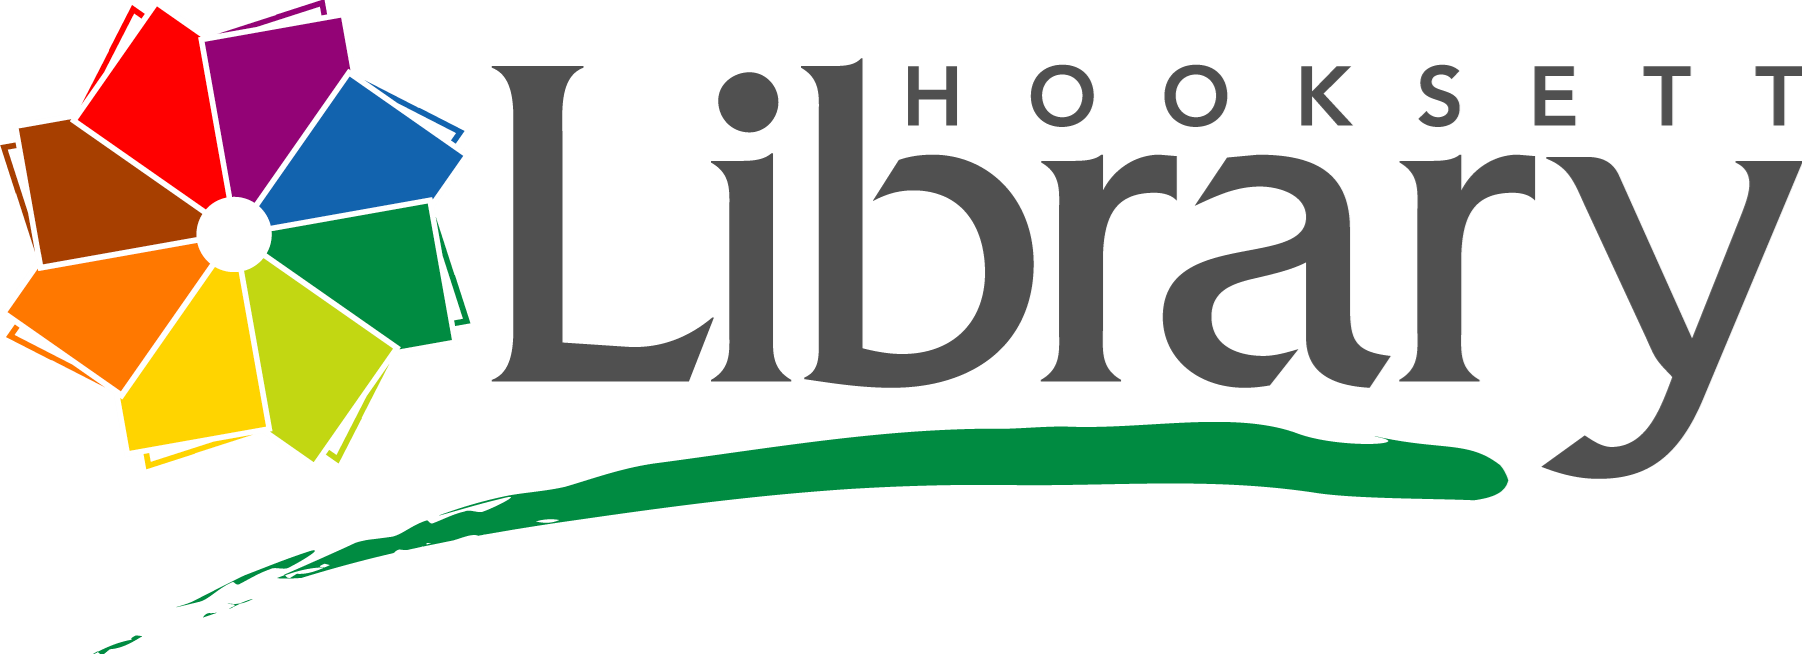 Hooksett Library